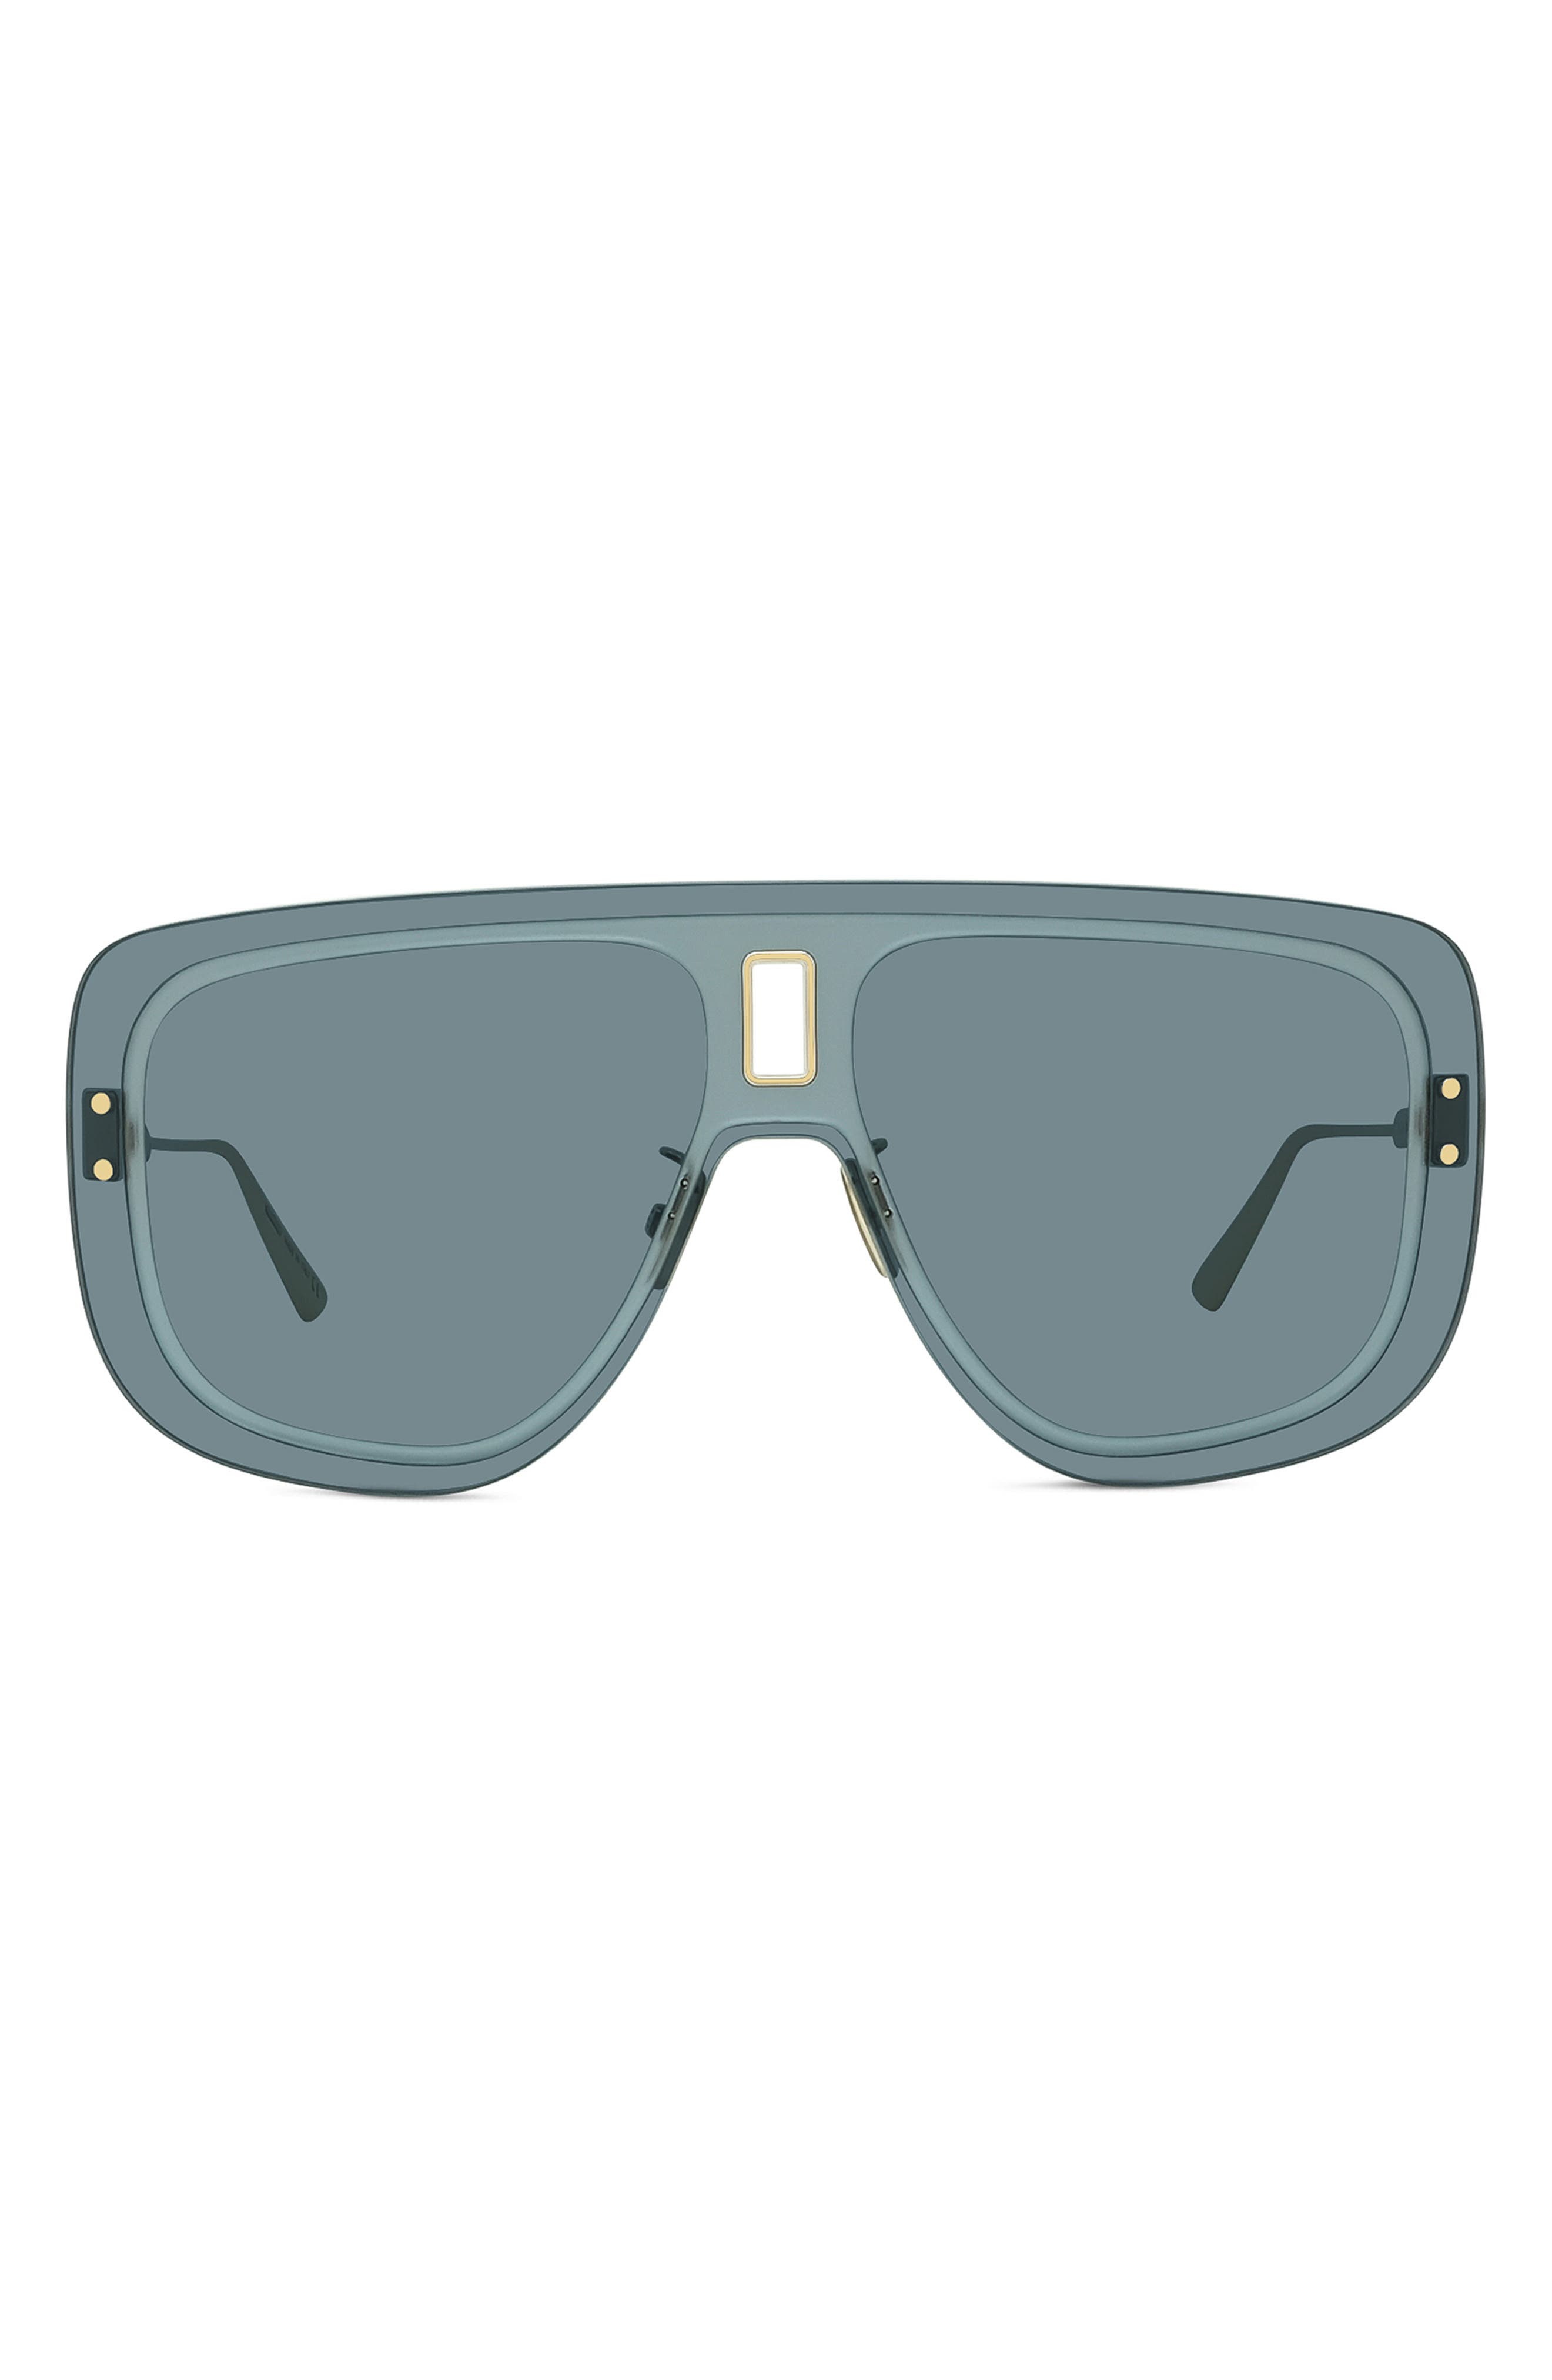 dior sunglasses women sale